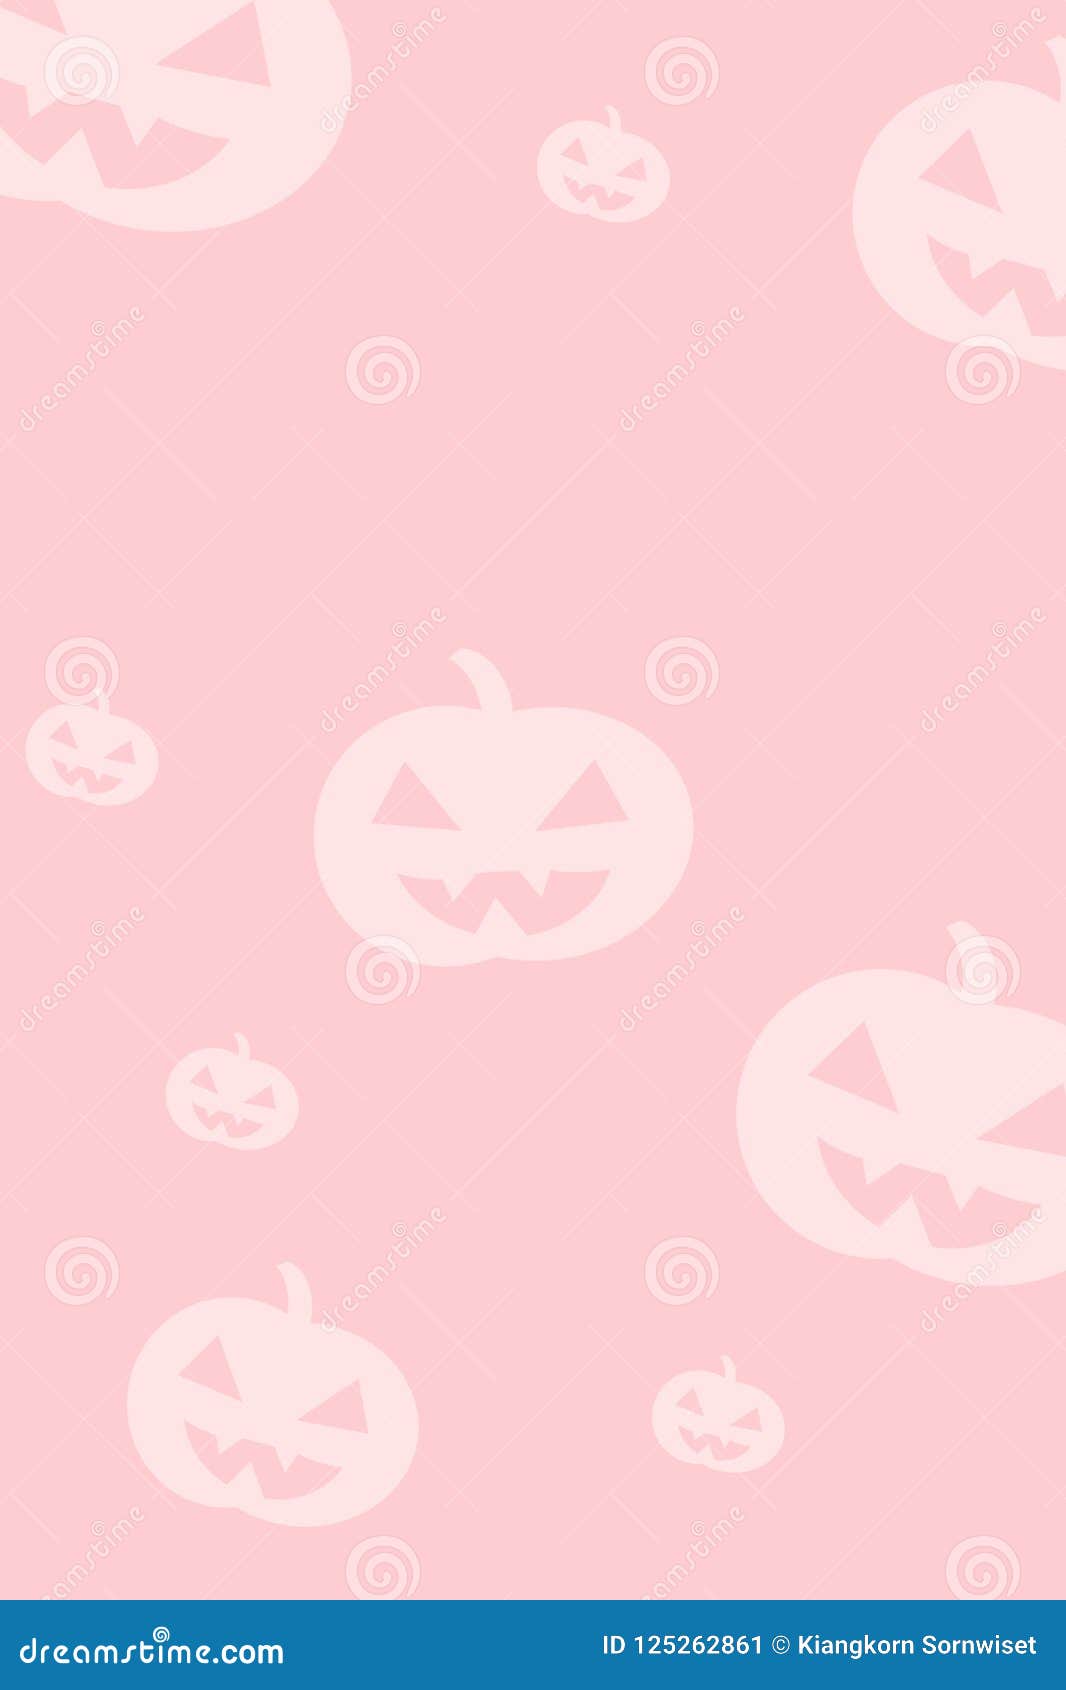 Nền Halloween trừu tượng màu hồng mang đến một cái nhìn mới lạ về lễ hội ma quái. Màu hồng tươi vui và thiết kế trừu tượng sẽ khiến bạn thích thú và tò mò xem những hình ảnh được trang trí bằng nền này.